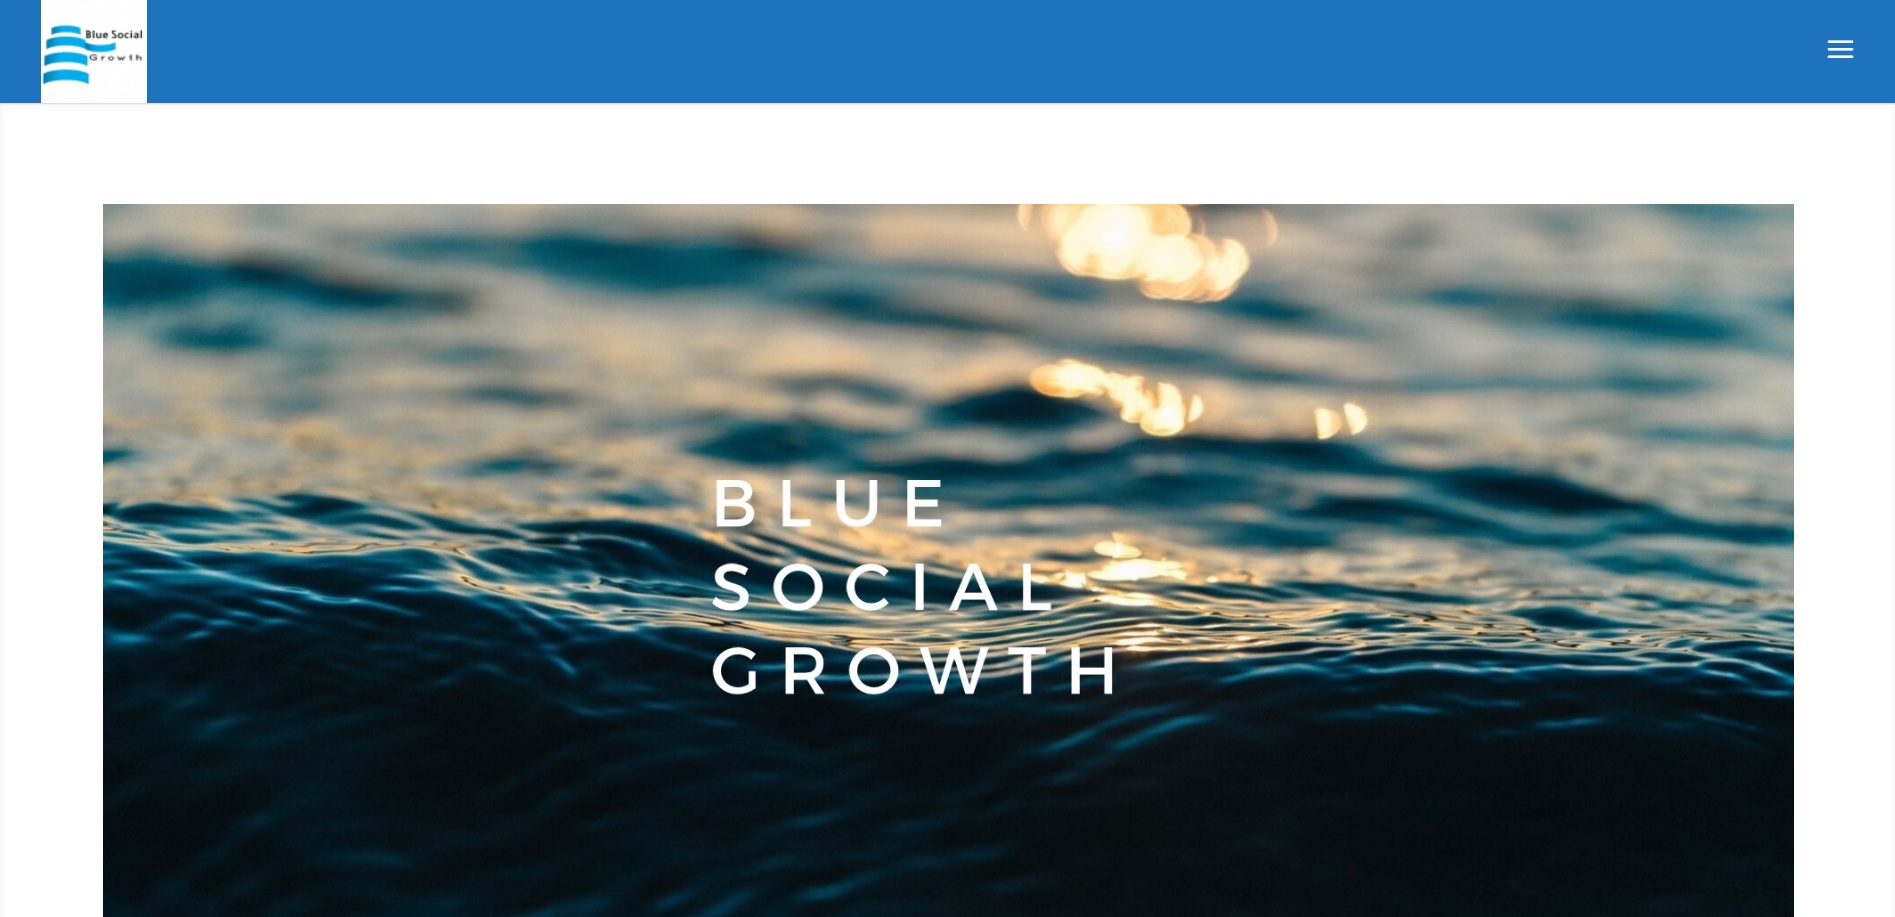 BLUE SOCIAL GROWTH